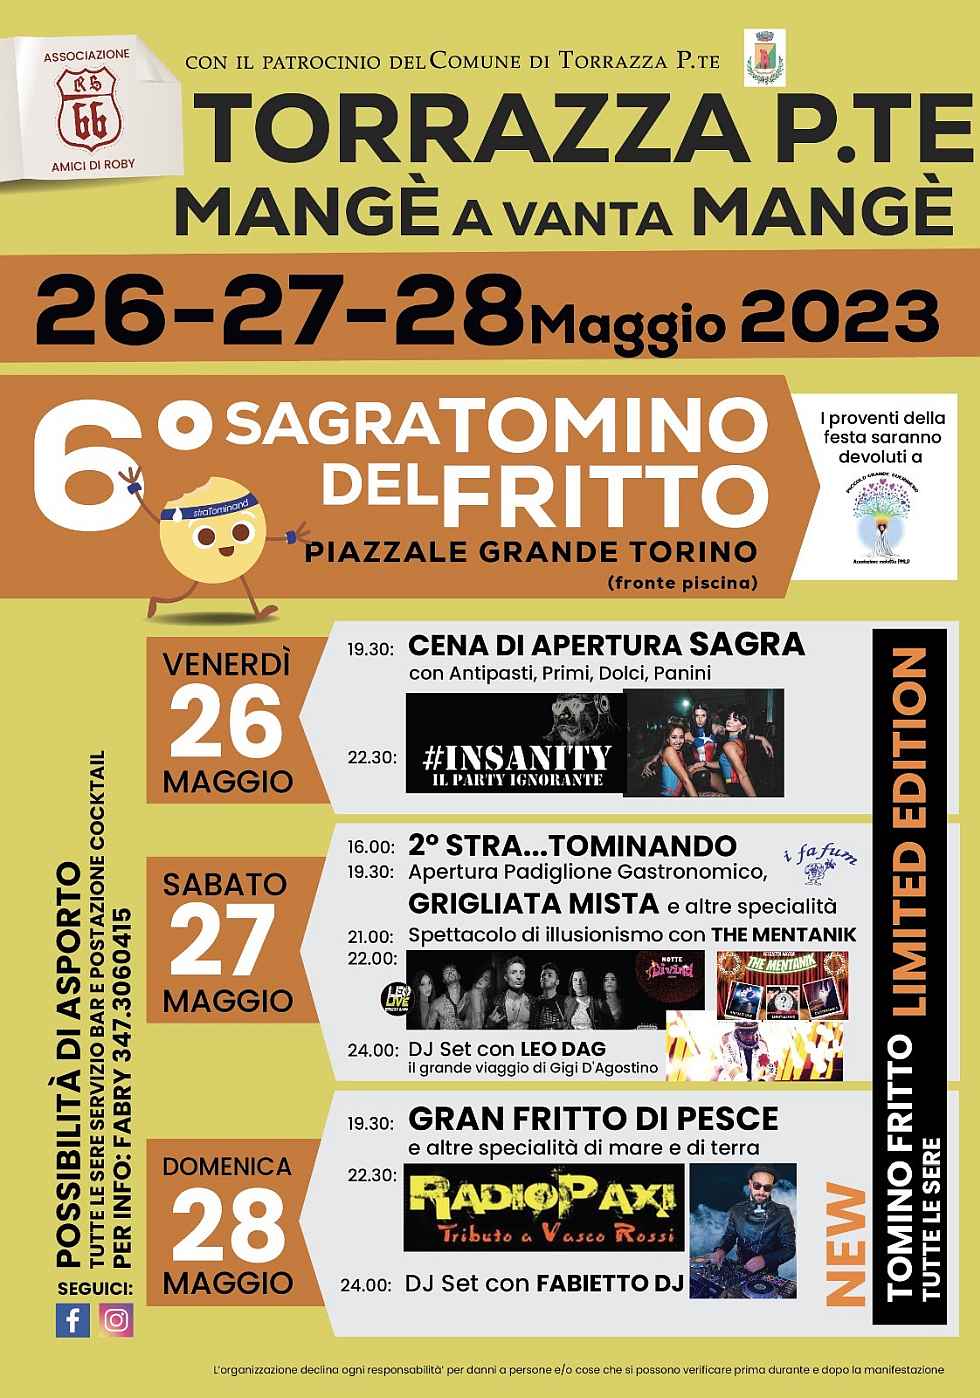 Torrazza Piemonte (TO)
"6^ Sagra del Tomino Fritto"
26-27-28 Maggio 2023 